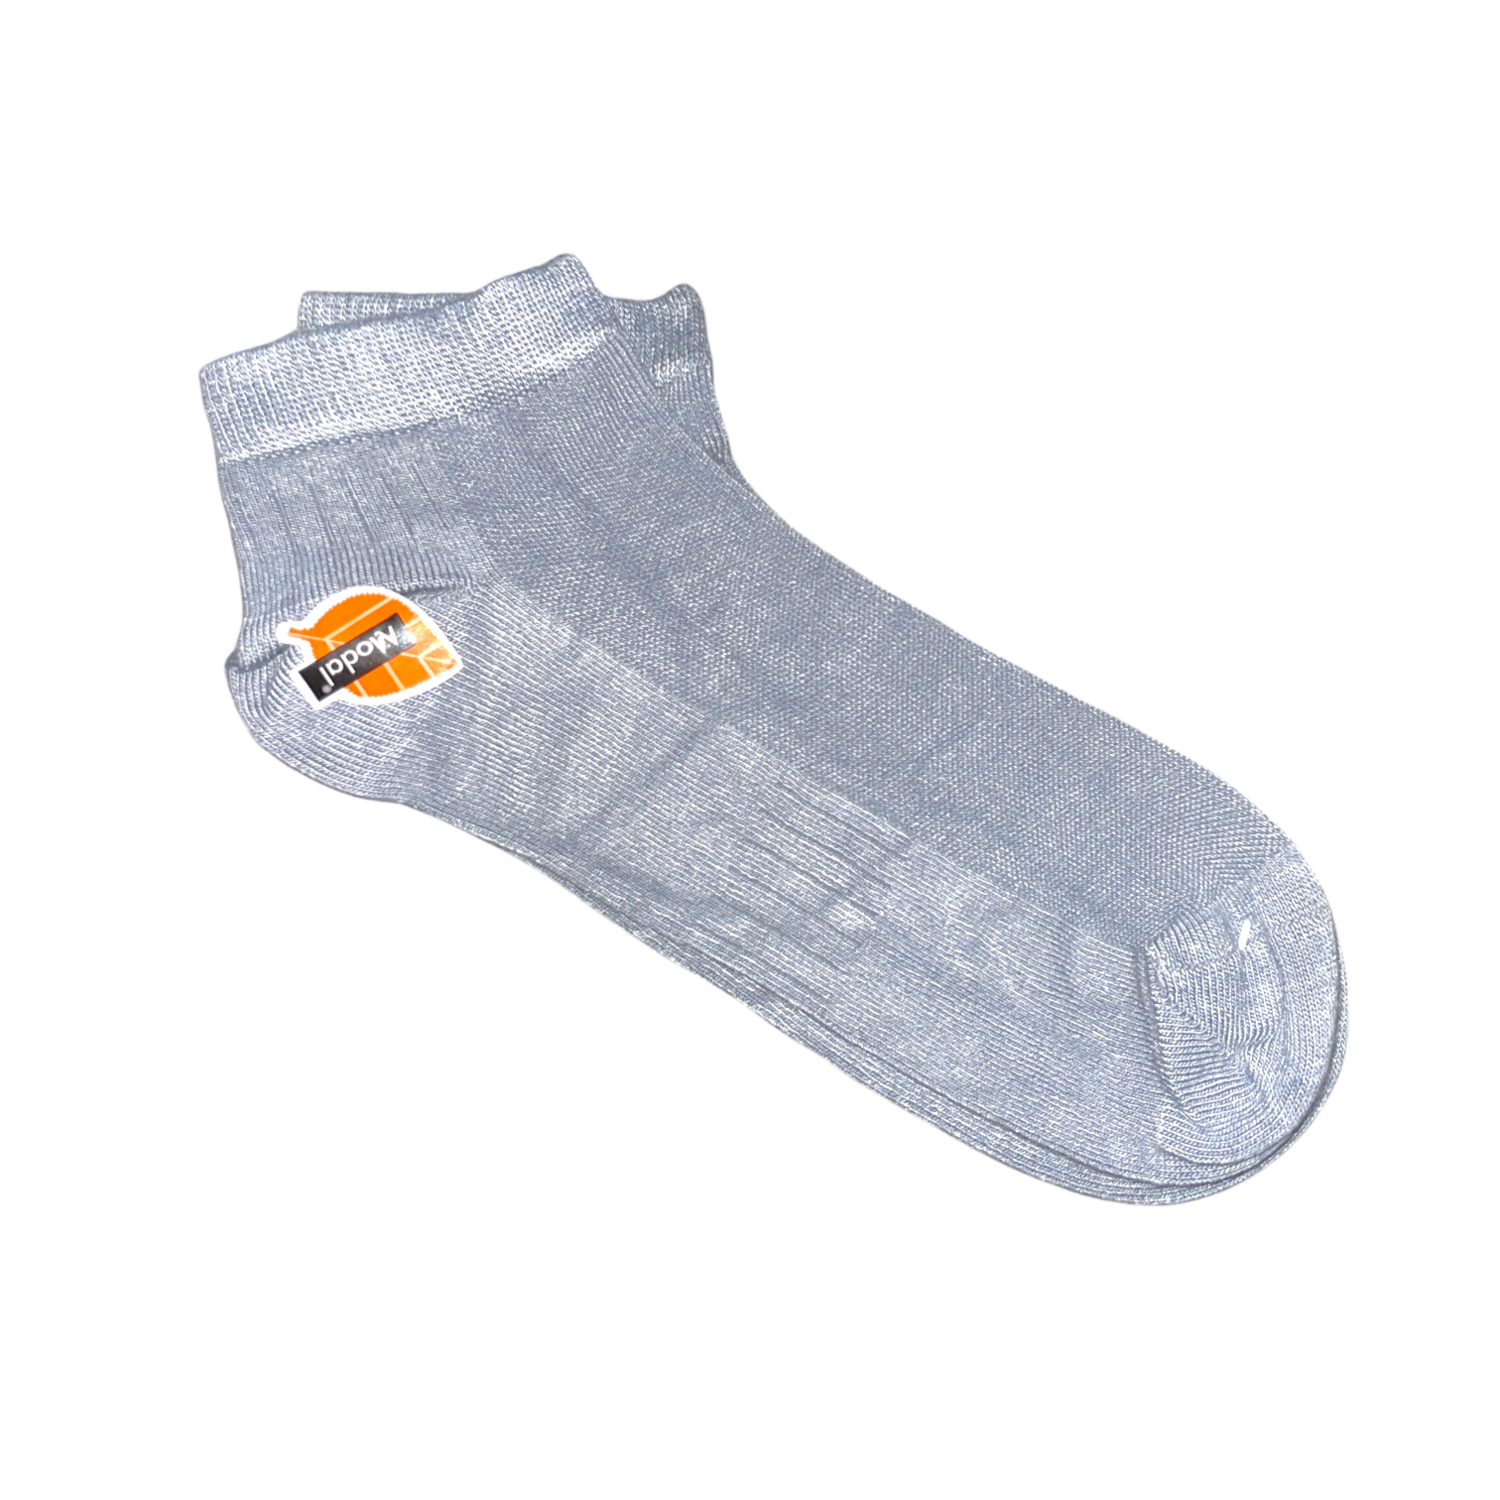 Modal Fabric Ankle Socks (3-Pack)